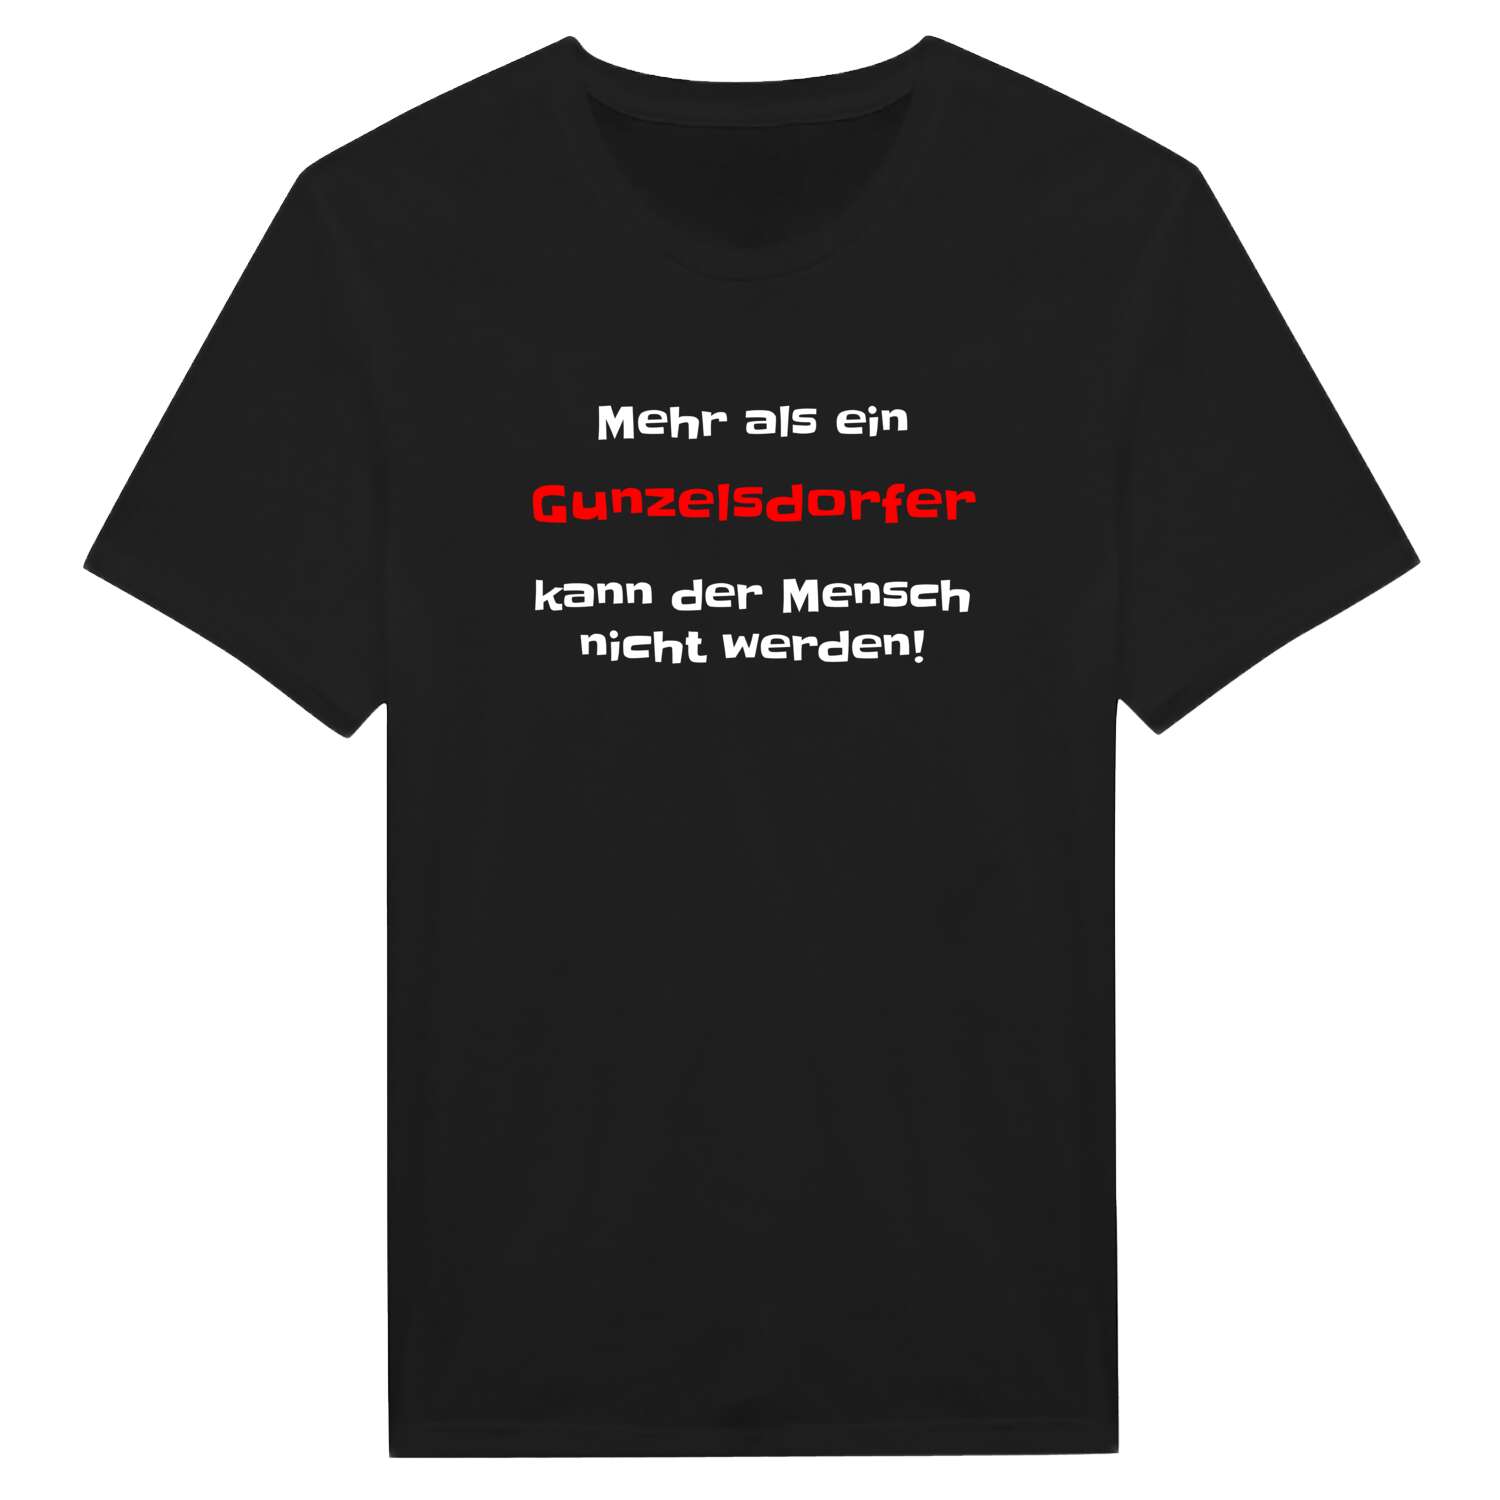 Gunzelsdorf T-Shirt »Mehr als ein«